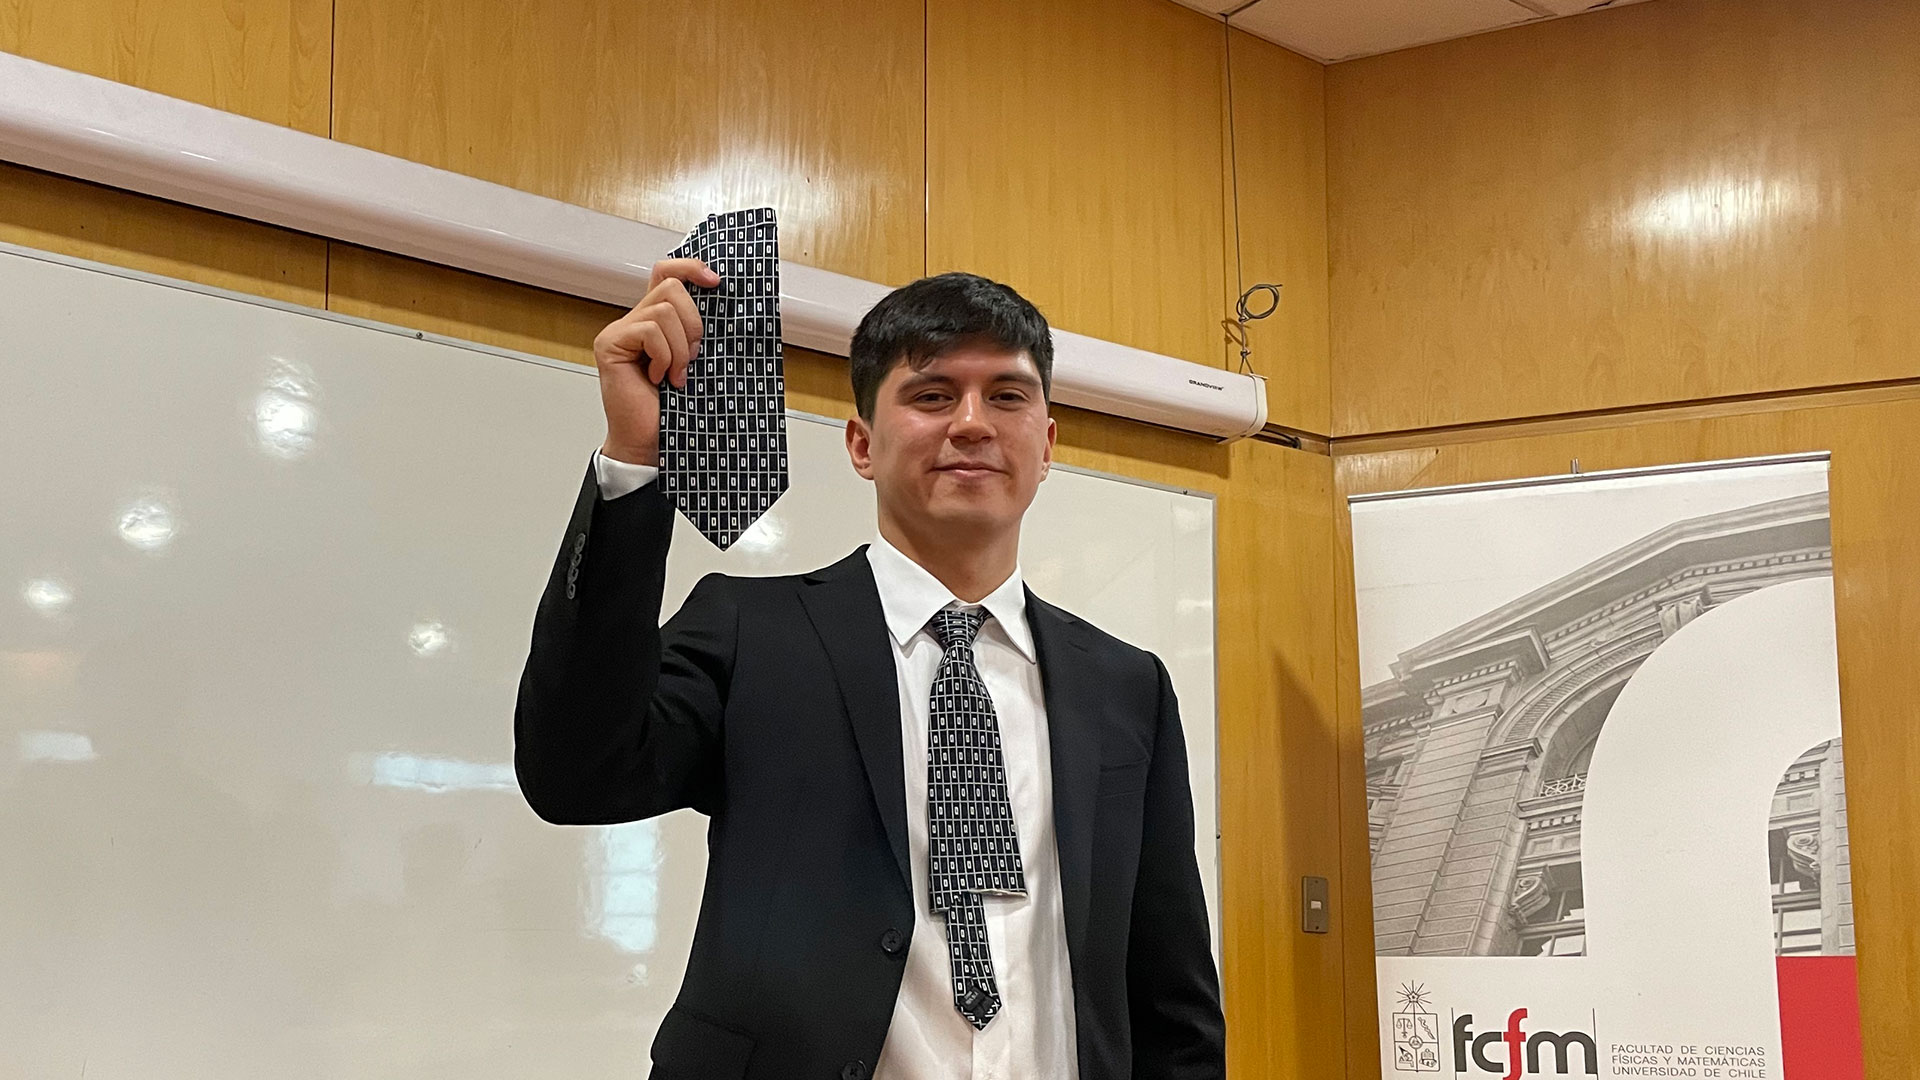 ¡Felicitaciones Bruno Rodríguez,nuevo ingeniero civil en computación!